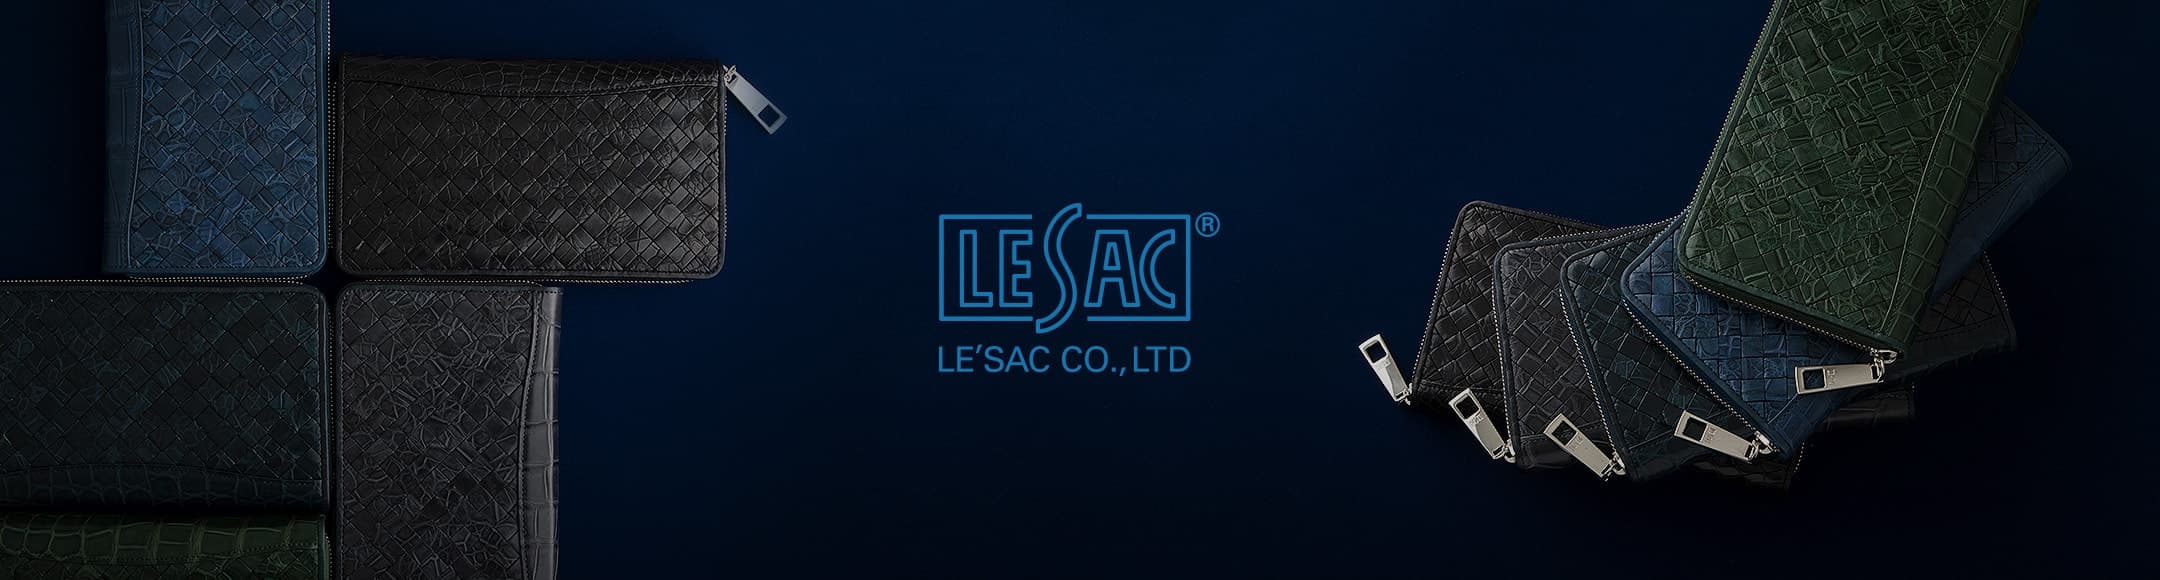 LE’SAC(レ・ザック)